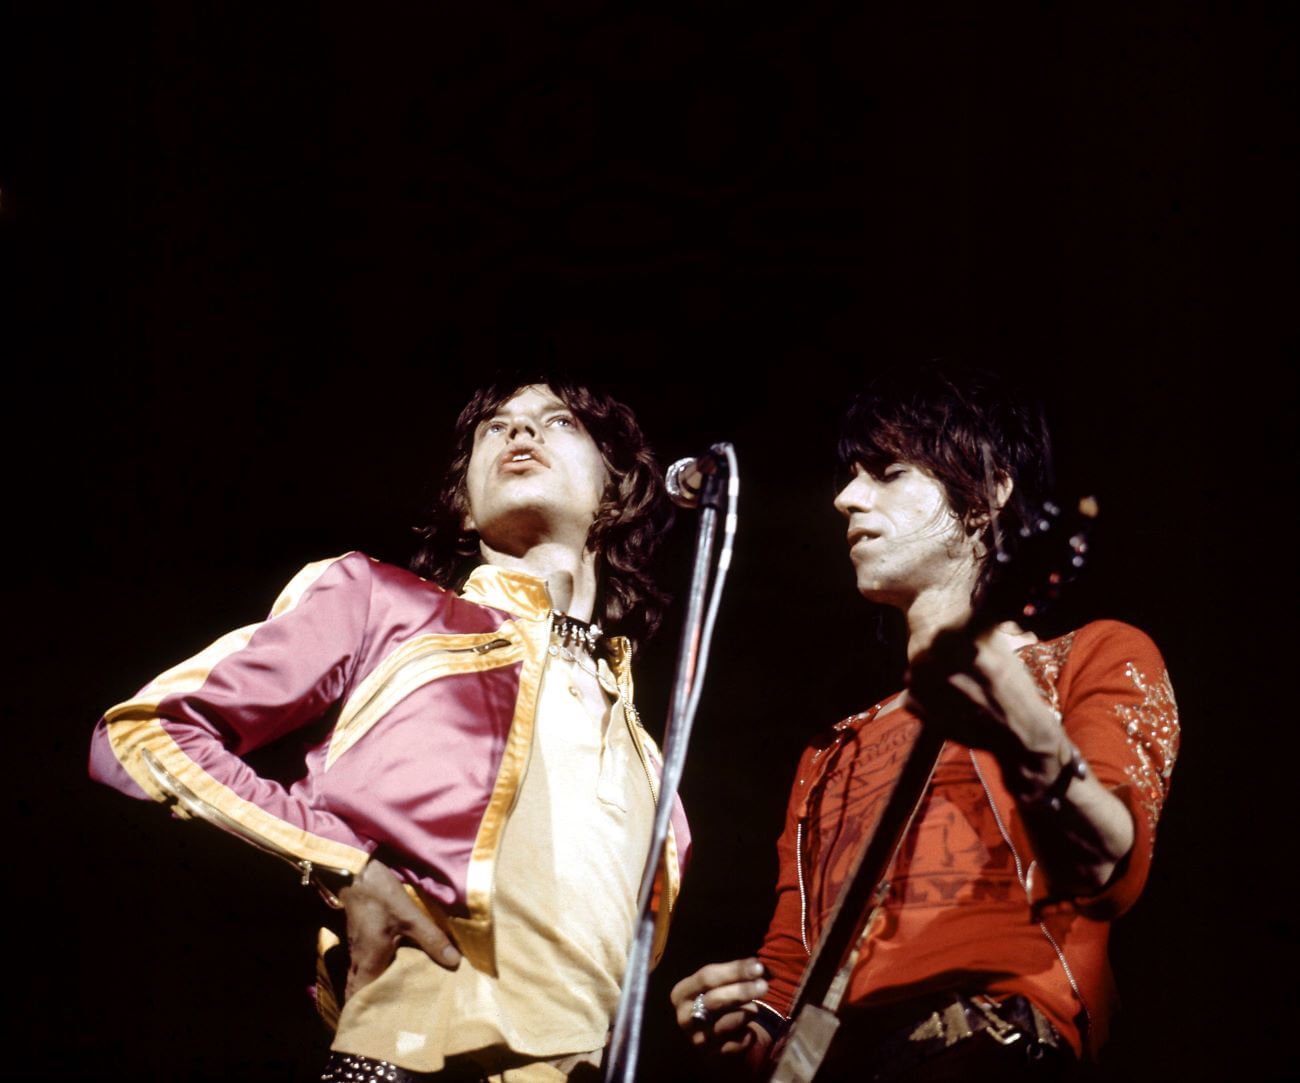 Keith Richards, Anılarını Yayınladıktan Sonra 'Gerçekten Kırgın' Mick Jagger'dan Özür Dilemek Zorunda Kaldı&nbsp;